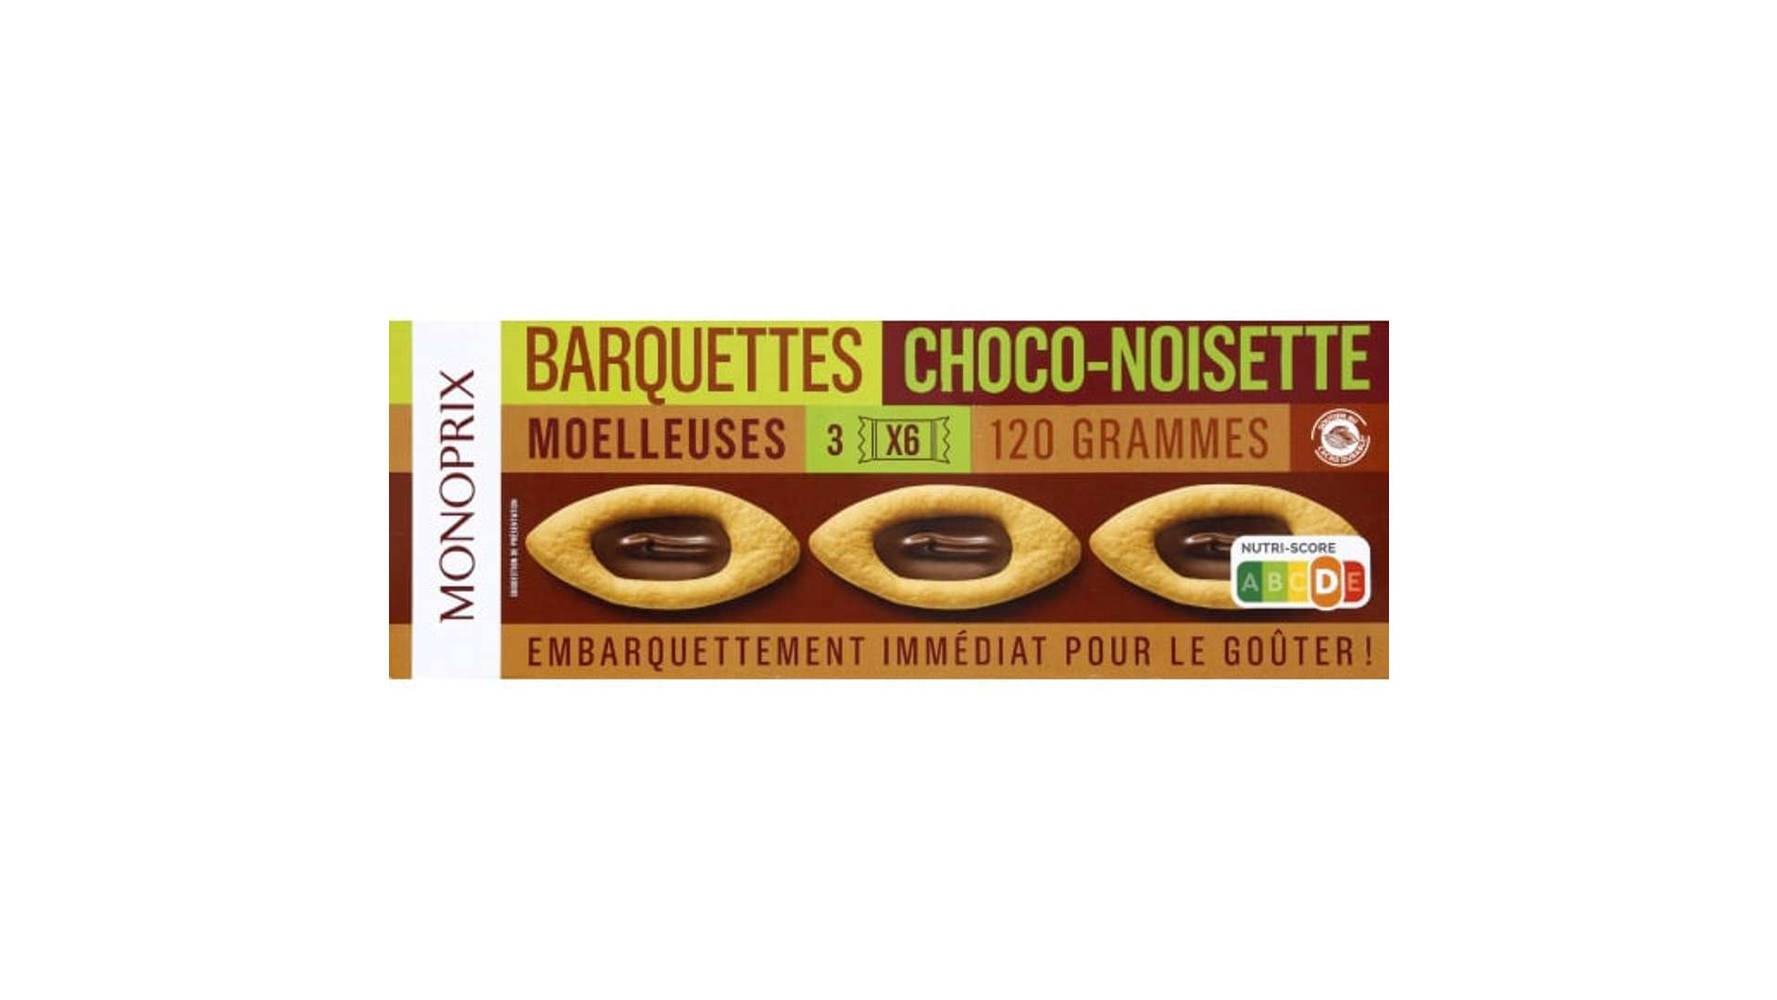 Monoprix Barquettes moelleuses choco-noisettes Le paquet de 18, 120g